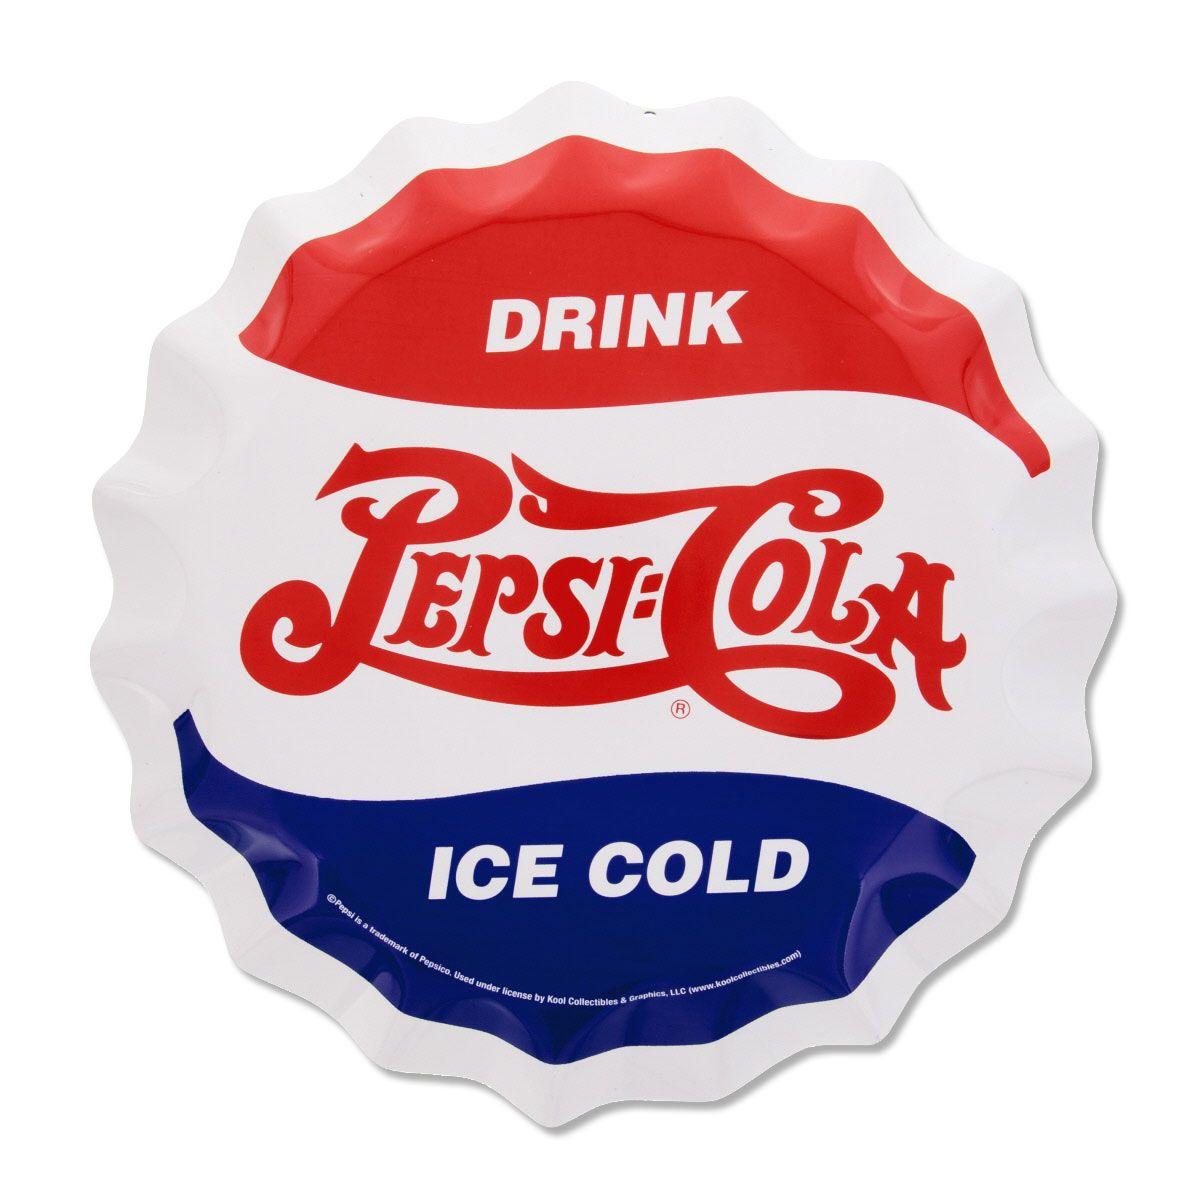 Antique Pepsi Logo - Pepsi-Cola Bottle Cap Style Metal Sign at Retro Planet